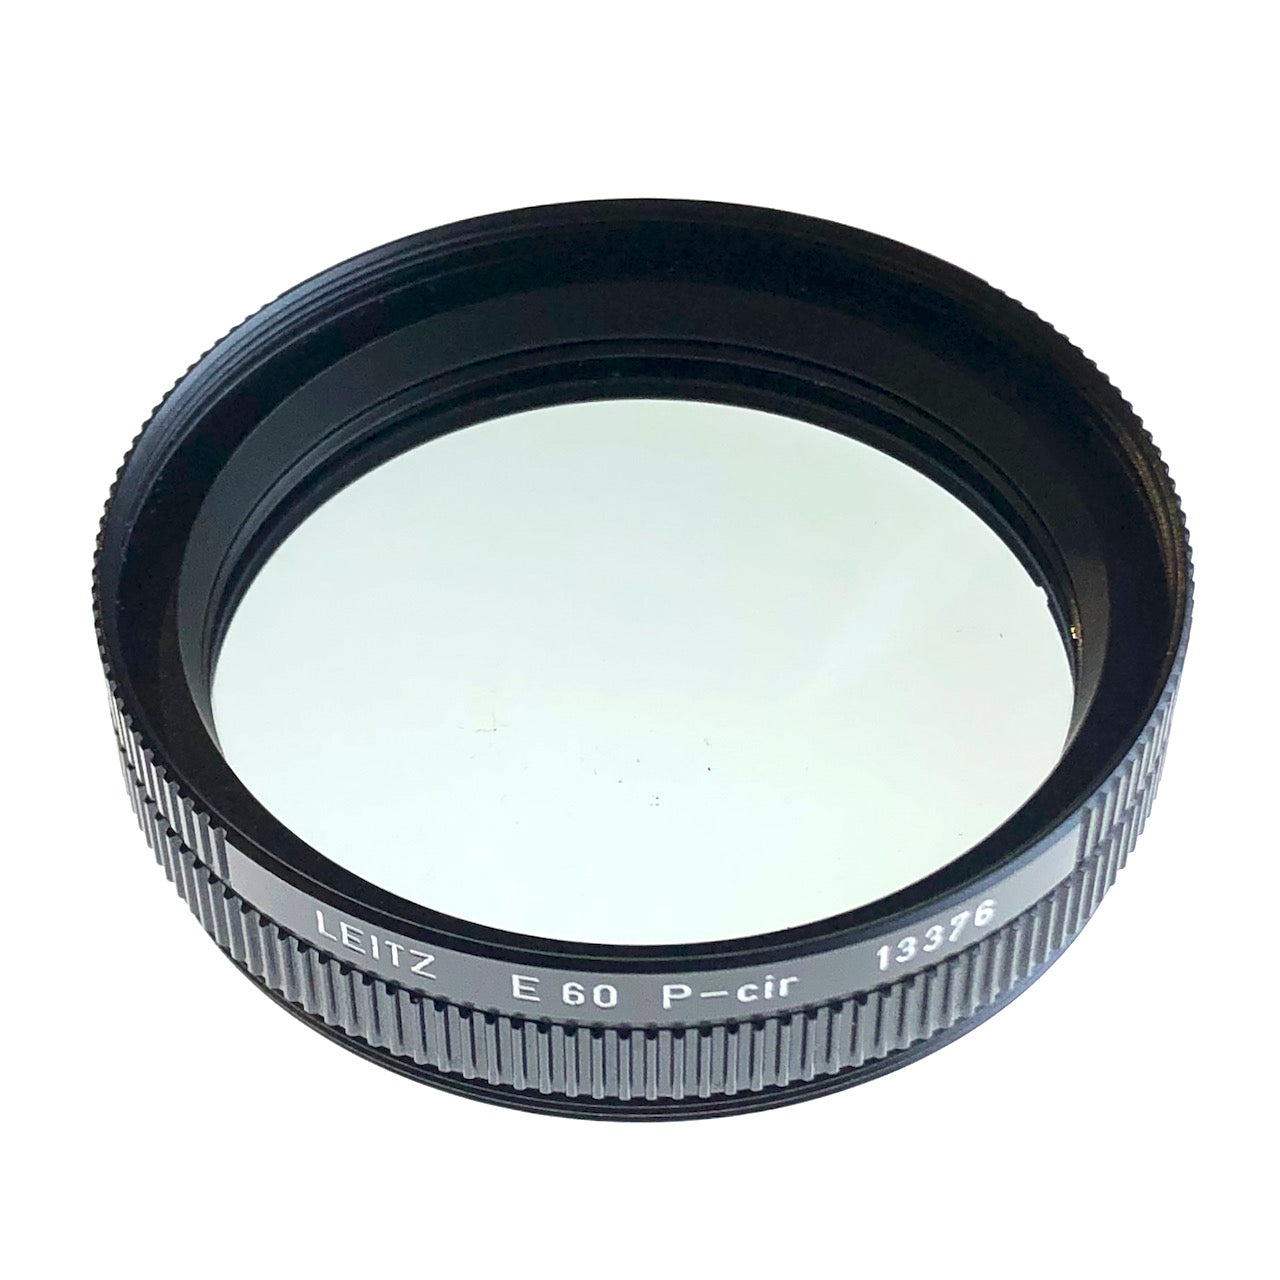 Leitz 13376 E60 P-cir filter